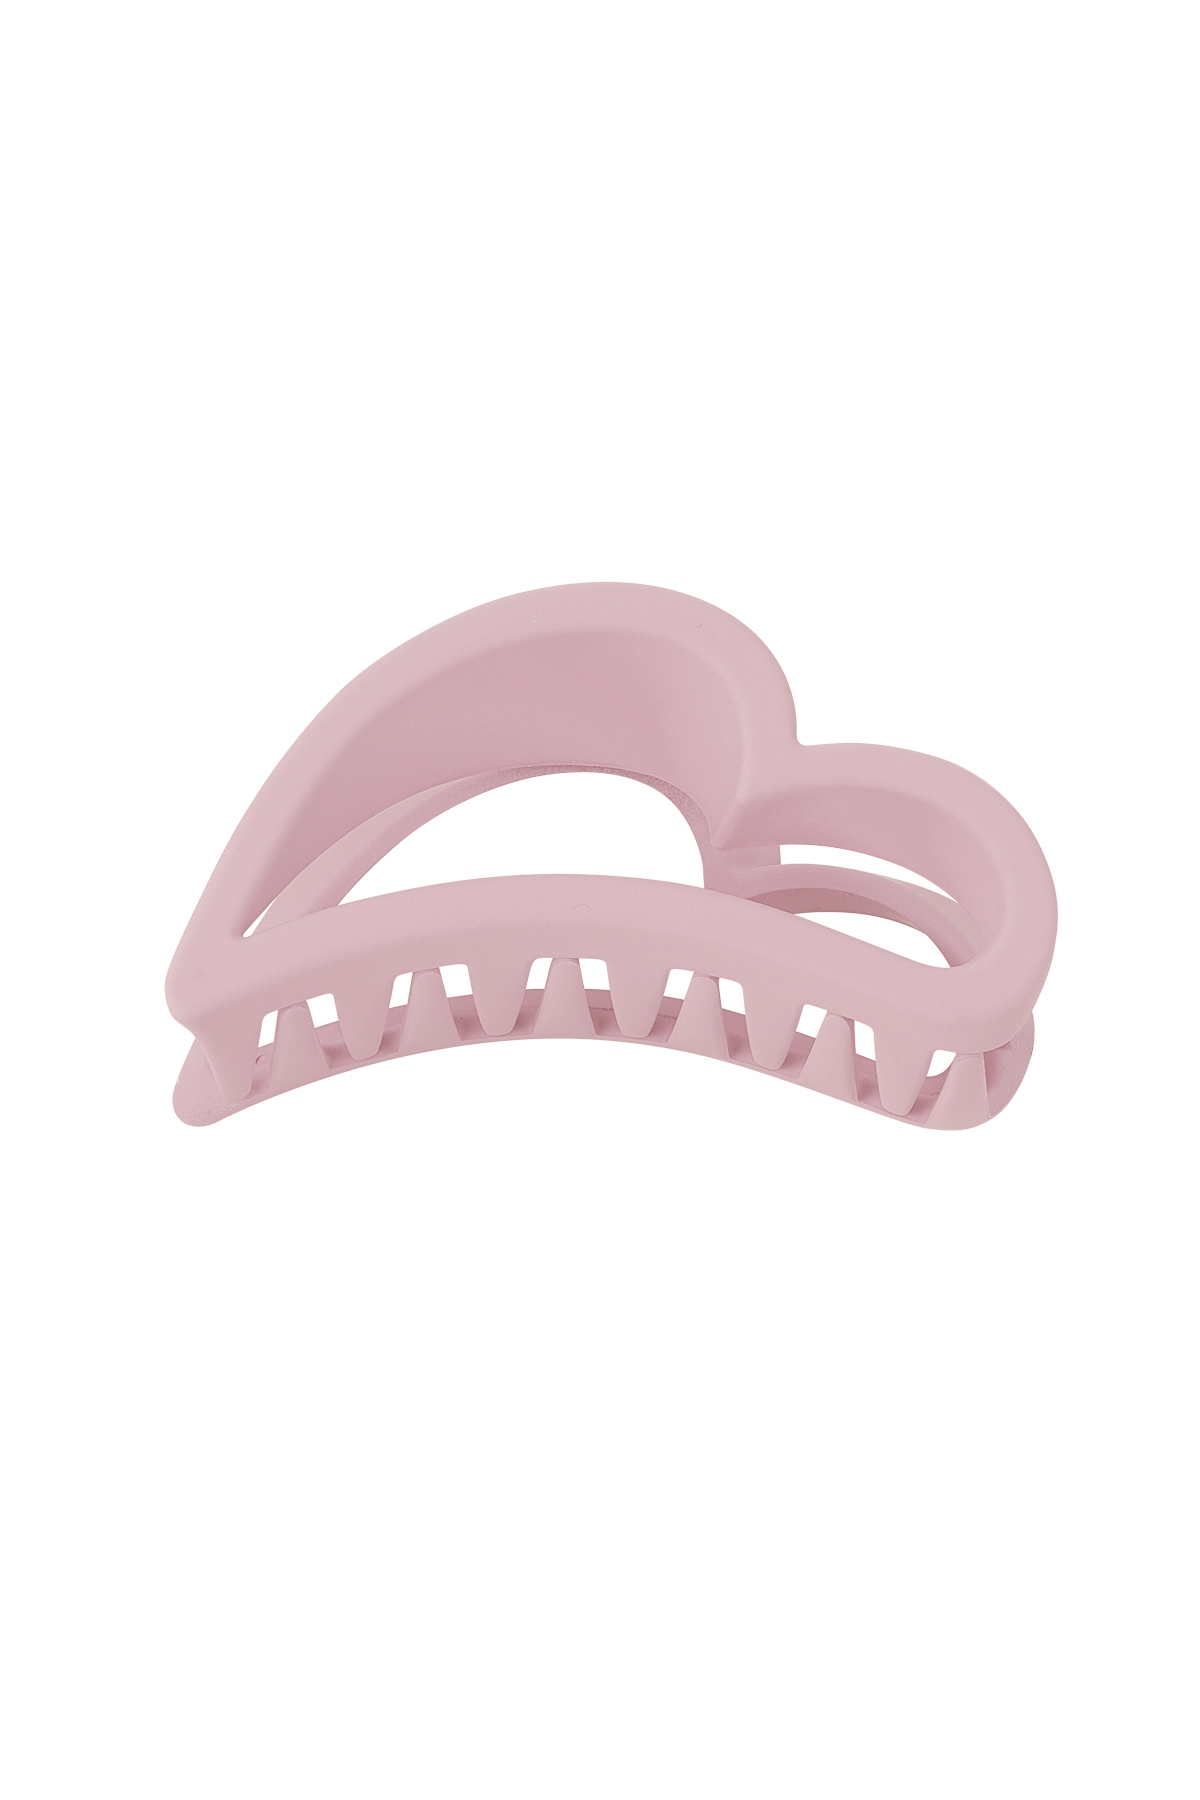 Fermaglio per capelli Wing - Plastica rosa pastello h5 